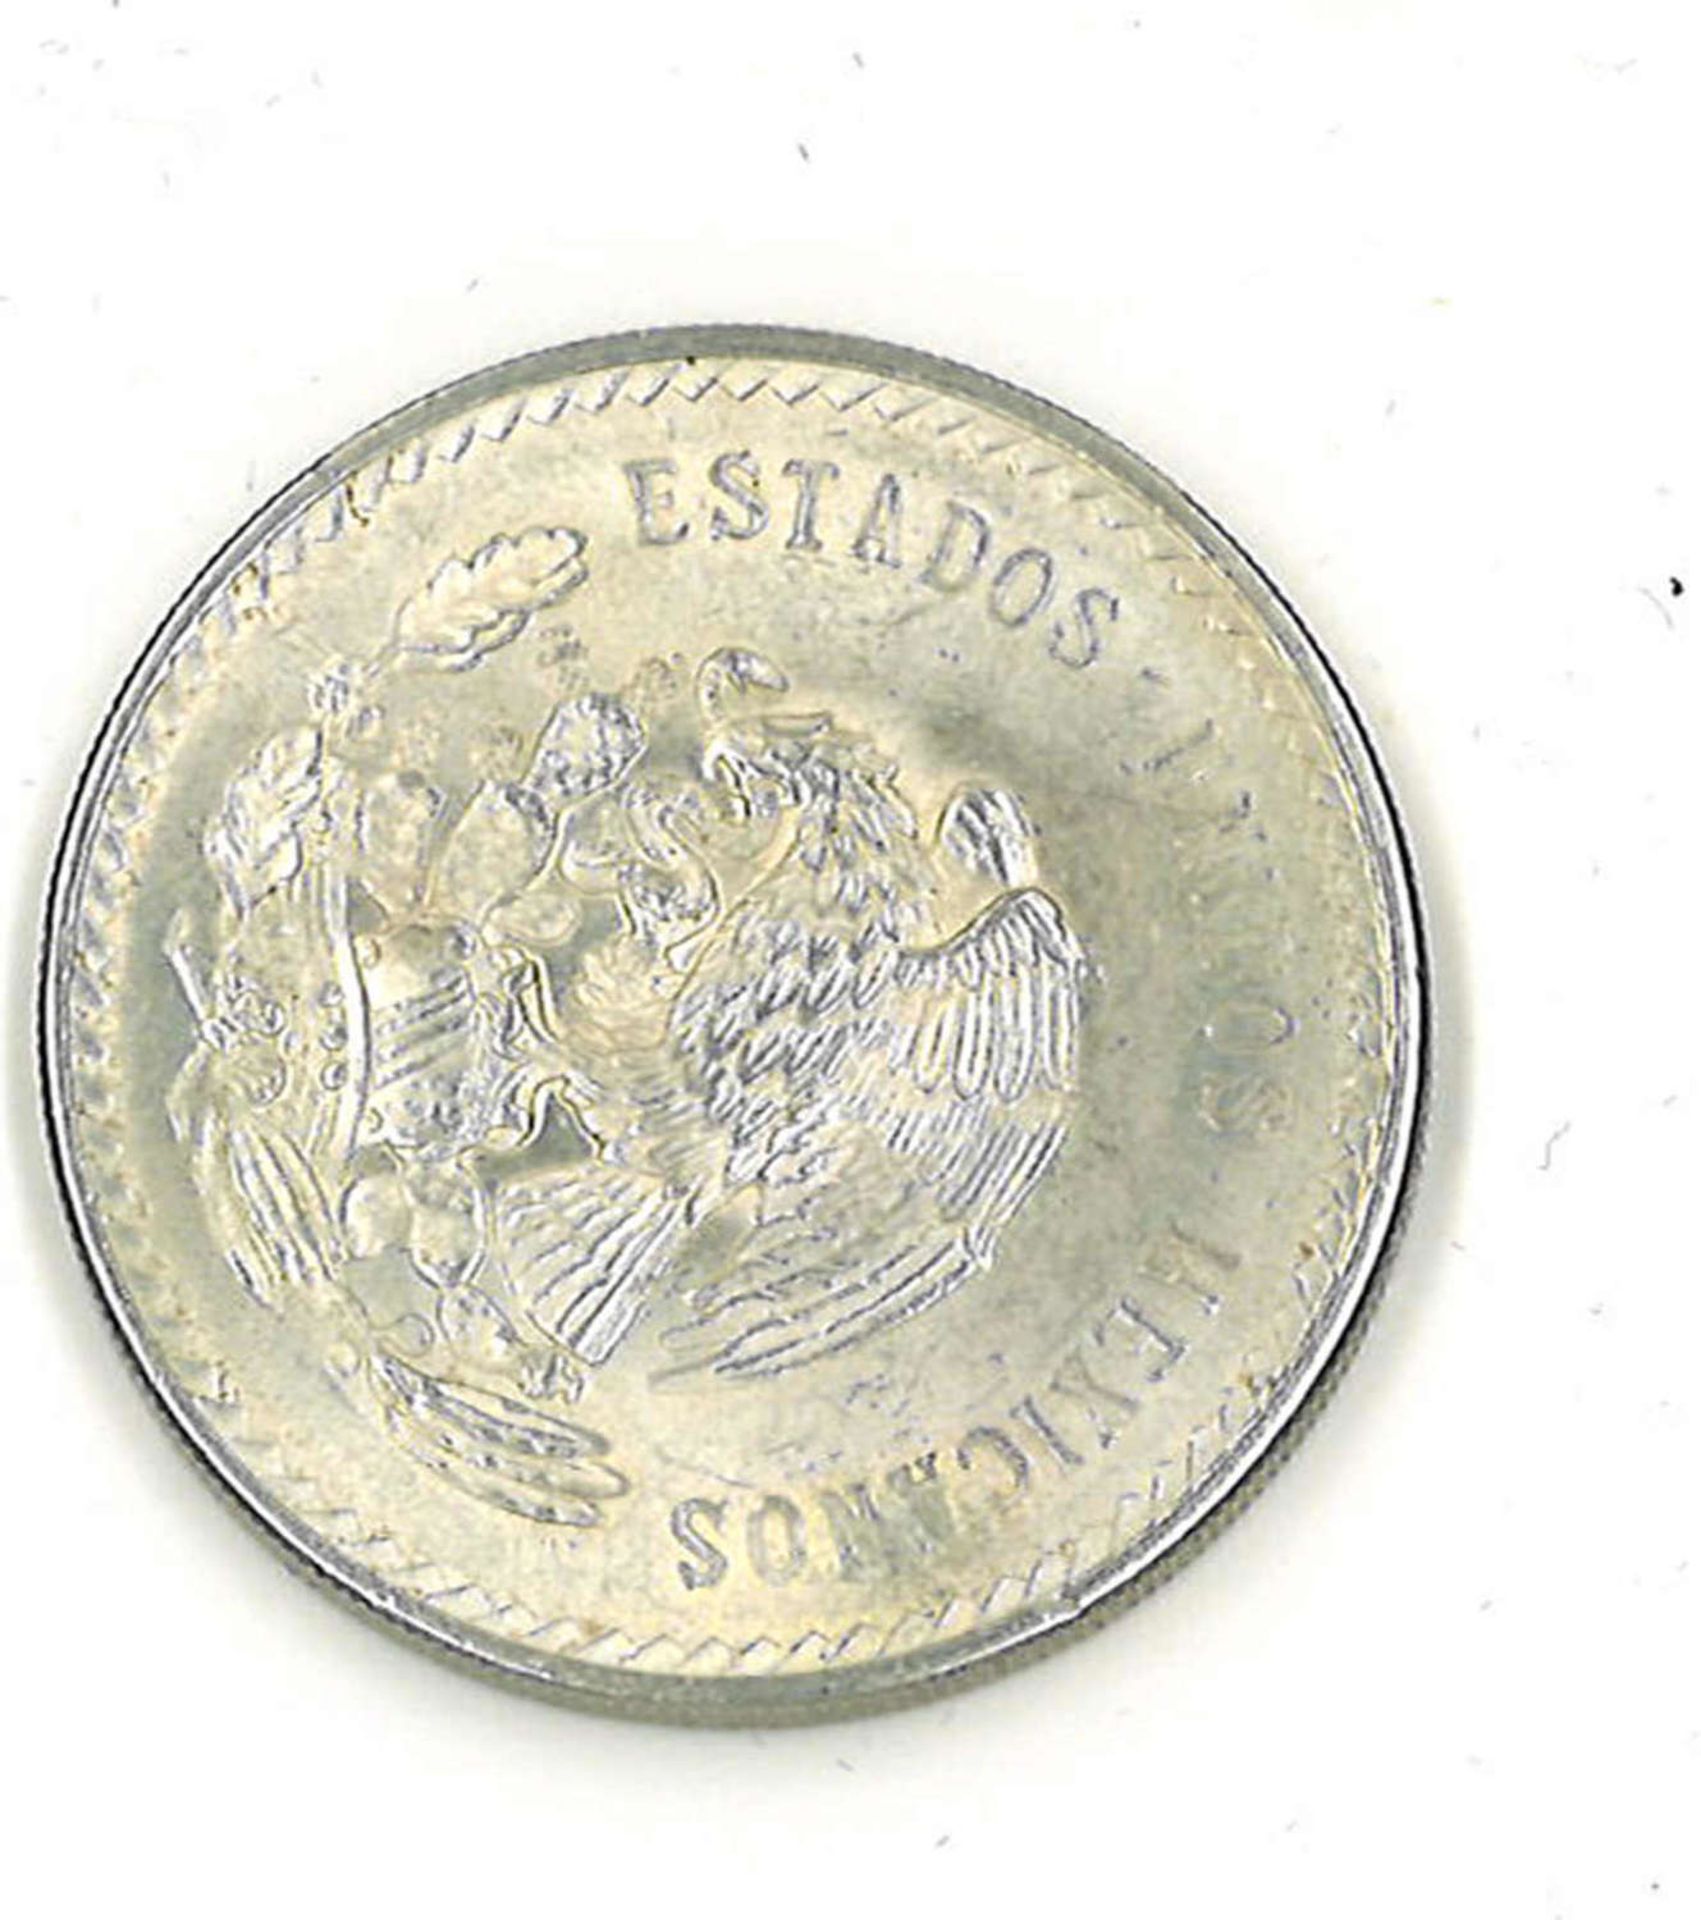 Mexico Silbermünze 1948, 5 Pesos. Katalog Nr. 465Mexico silver coin 1948, 5 pesos. Catalog No. 465 - Image 2 of 2